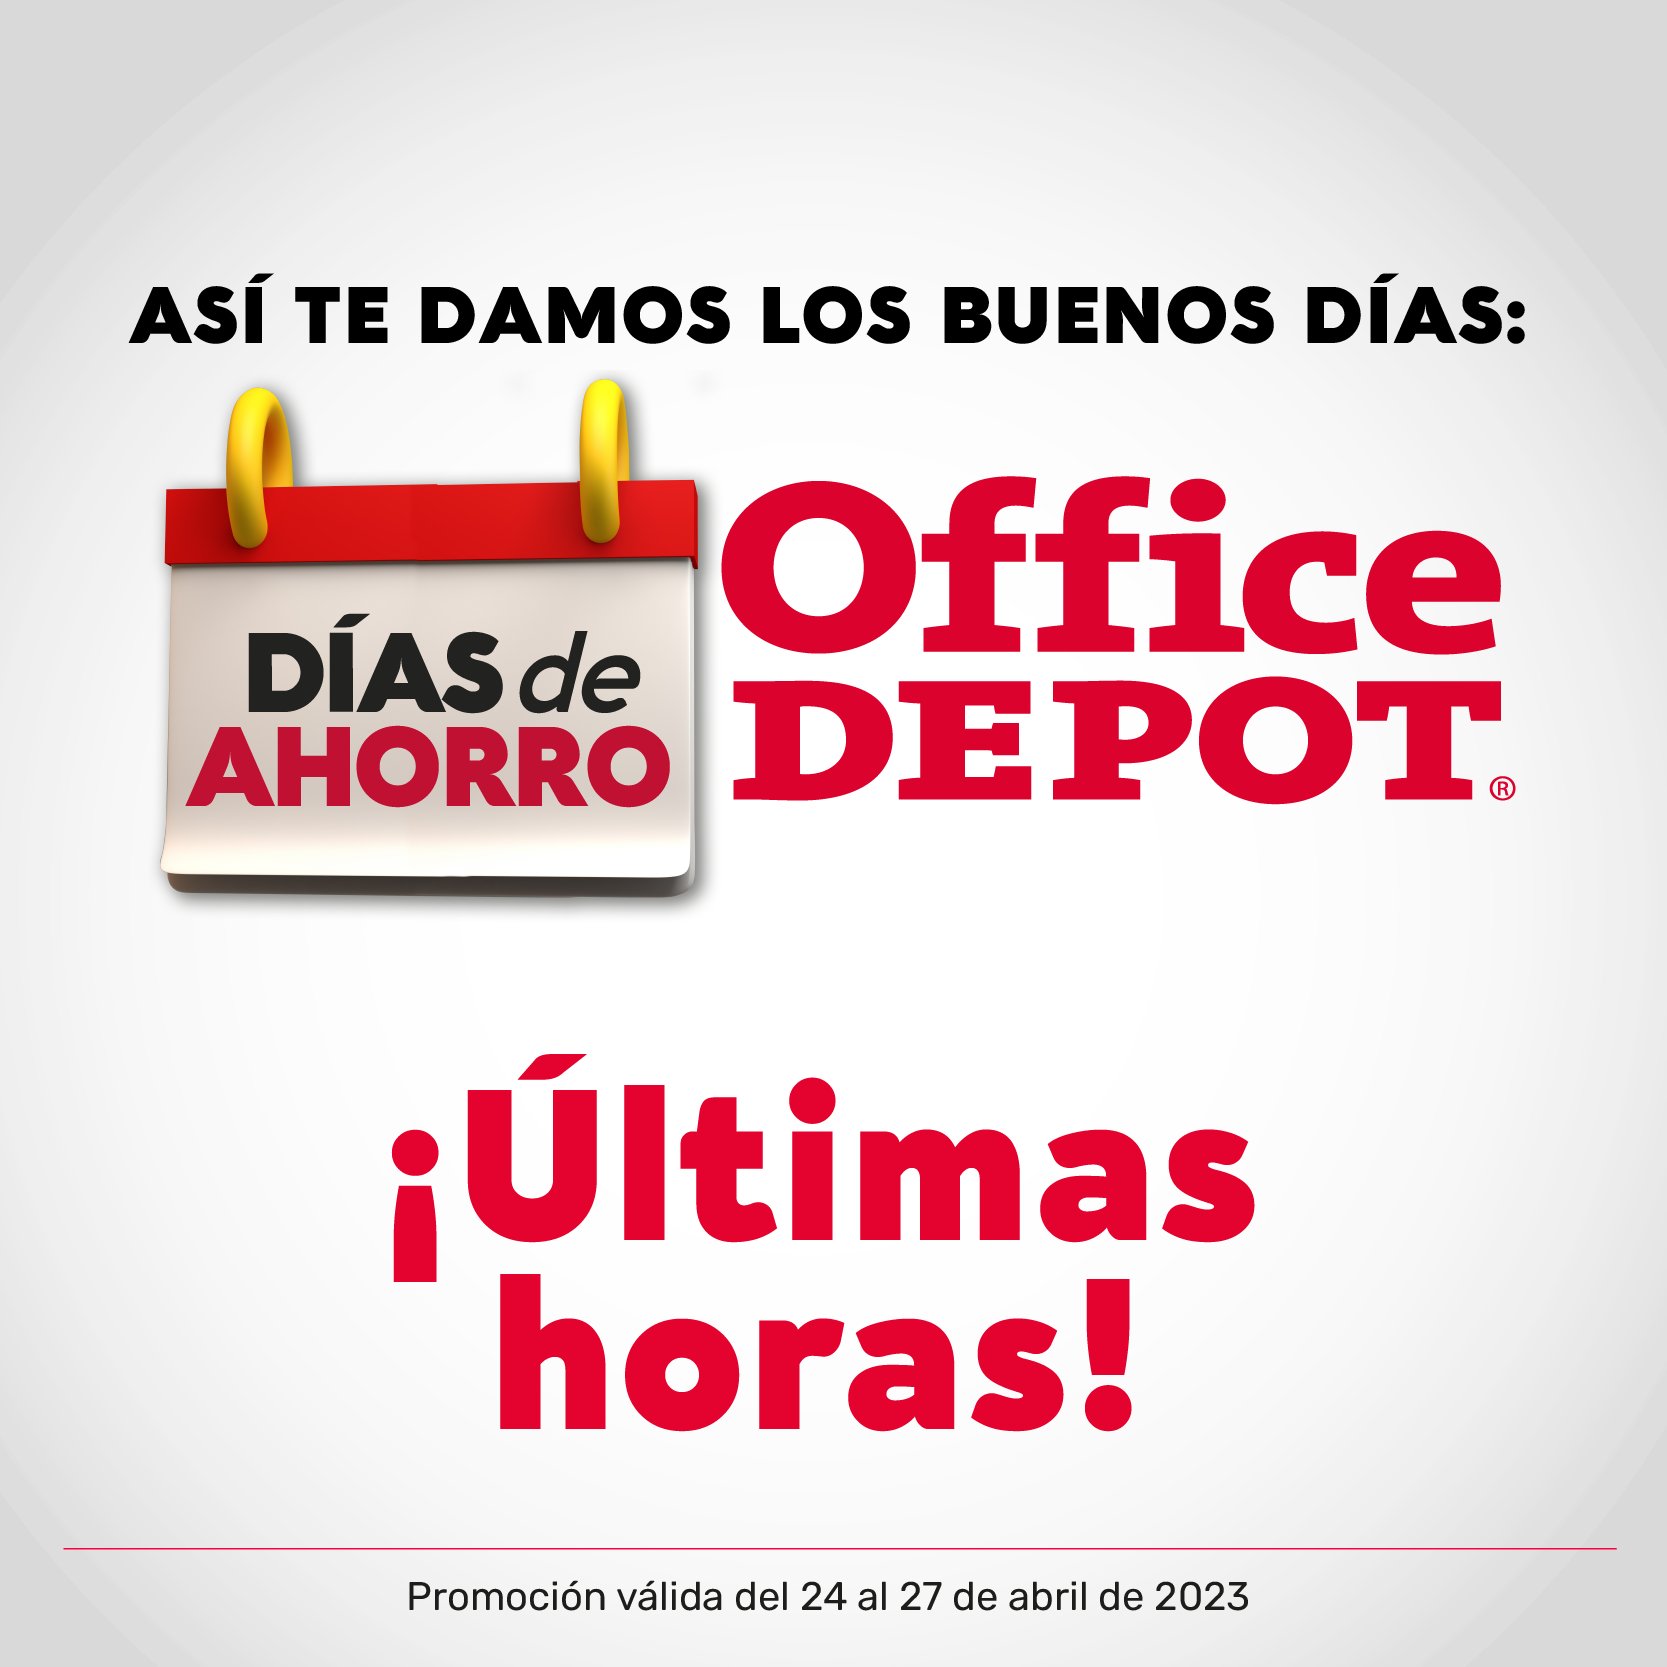 Office Depot Panamá (@OfficeDepotPa) / Twitter